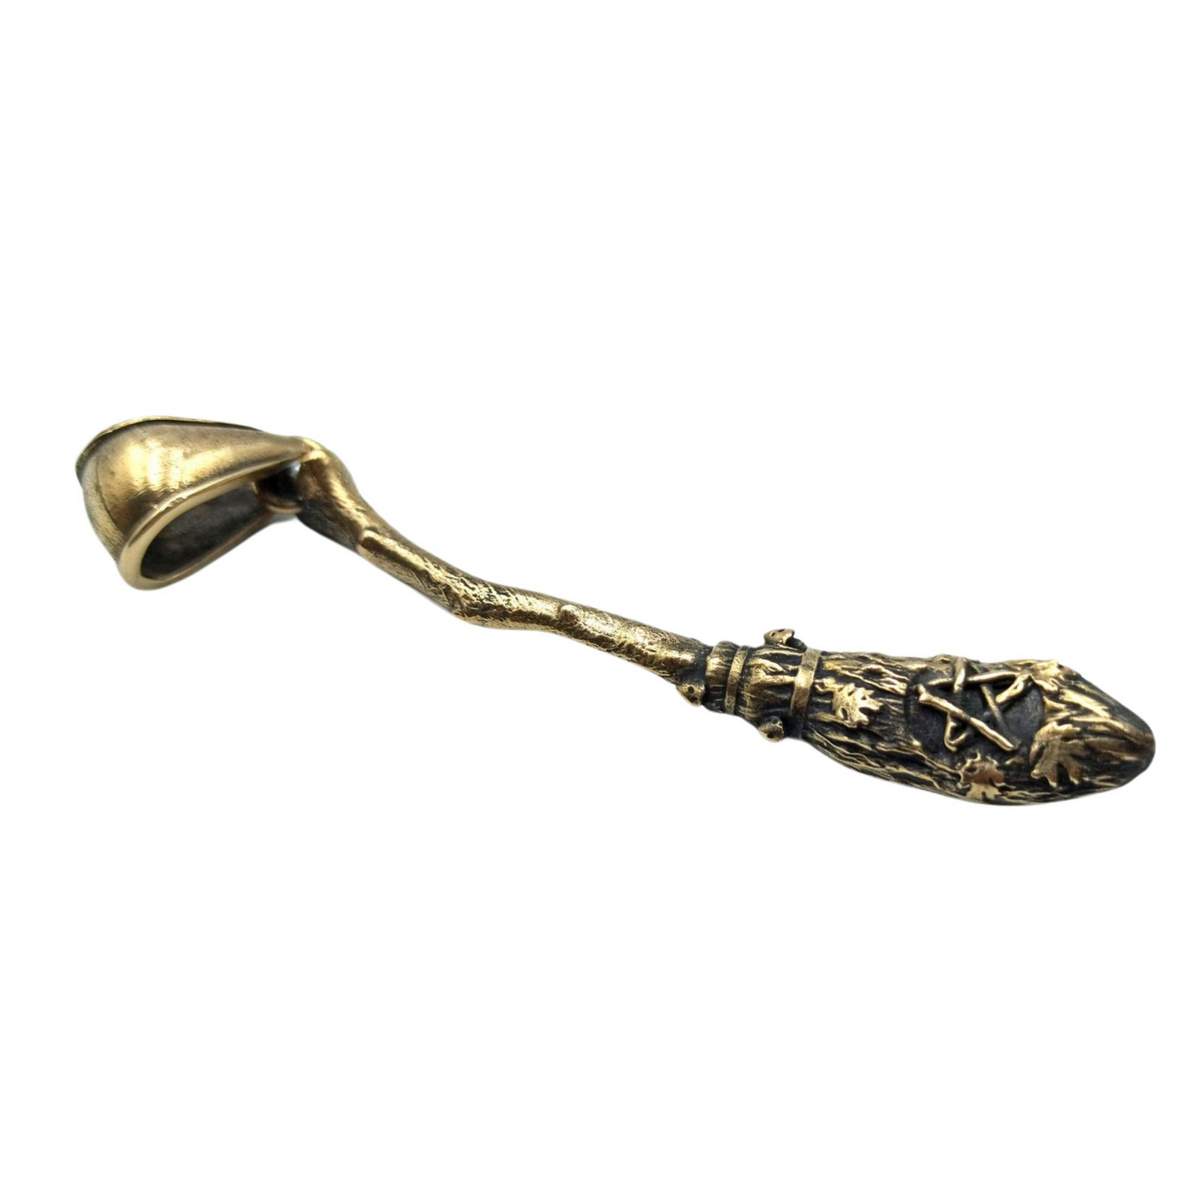 Witch broom bronze pendant   